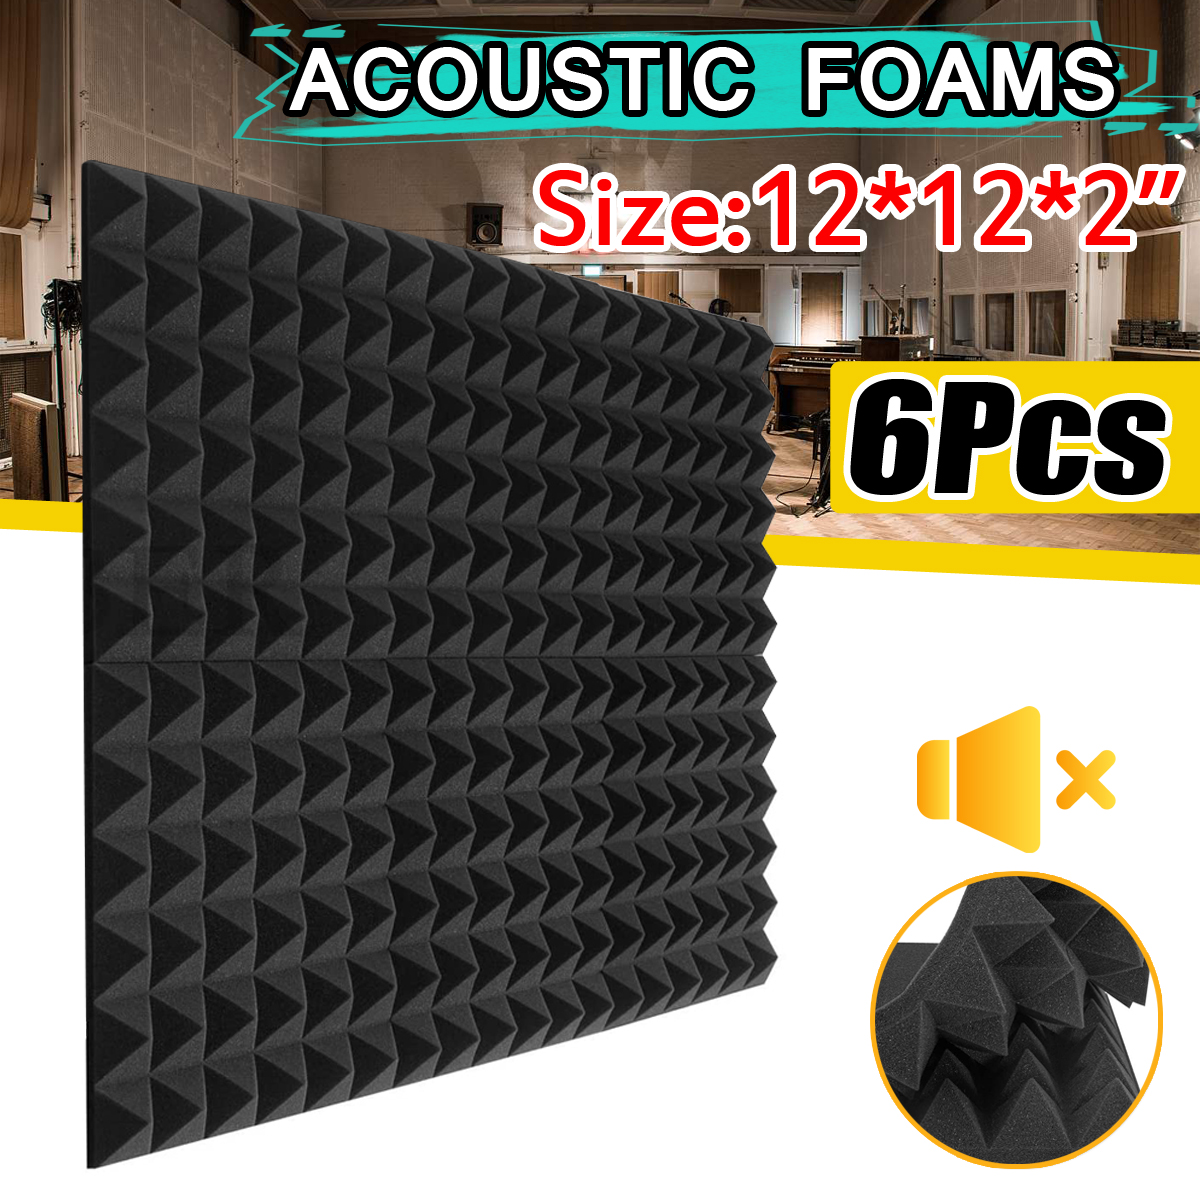 6Pcs-Acoustic-Foam-Studio-Soundproofing-Foam-Wedges-Wall-Tiles-12-x-12-x-2inch-1749893-1